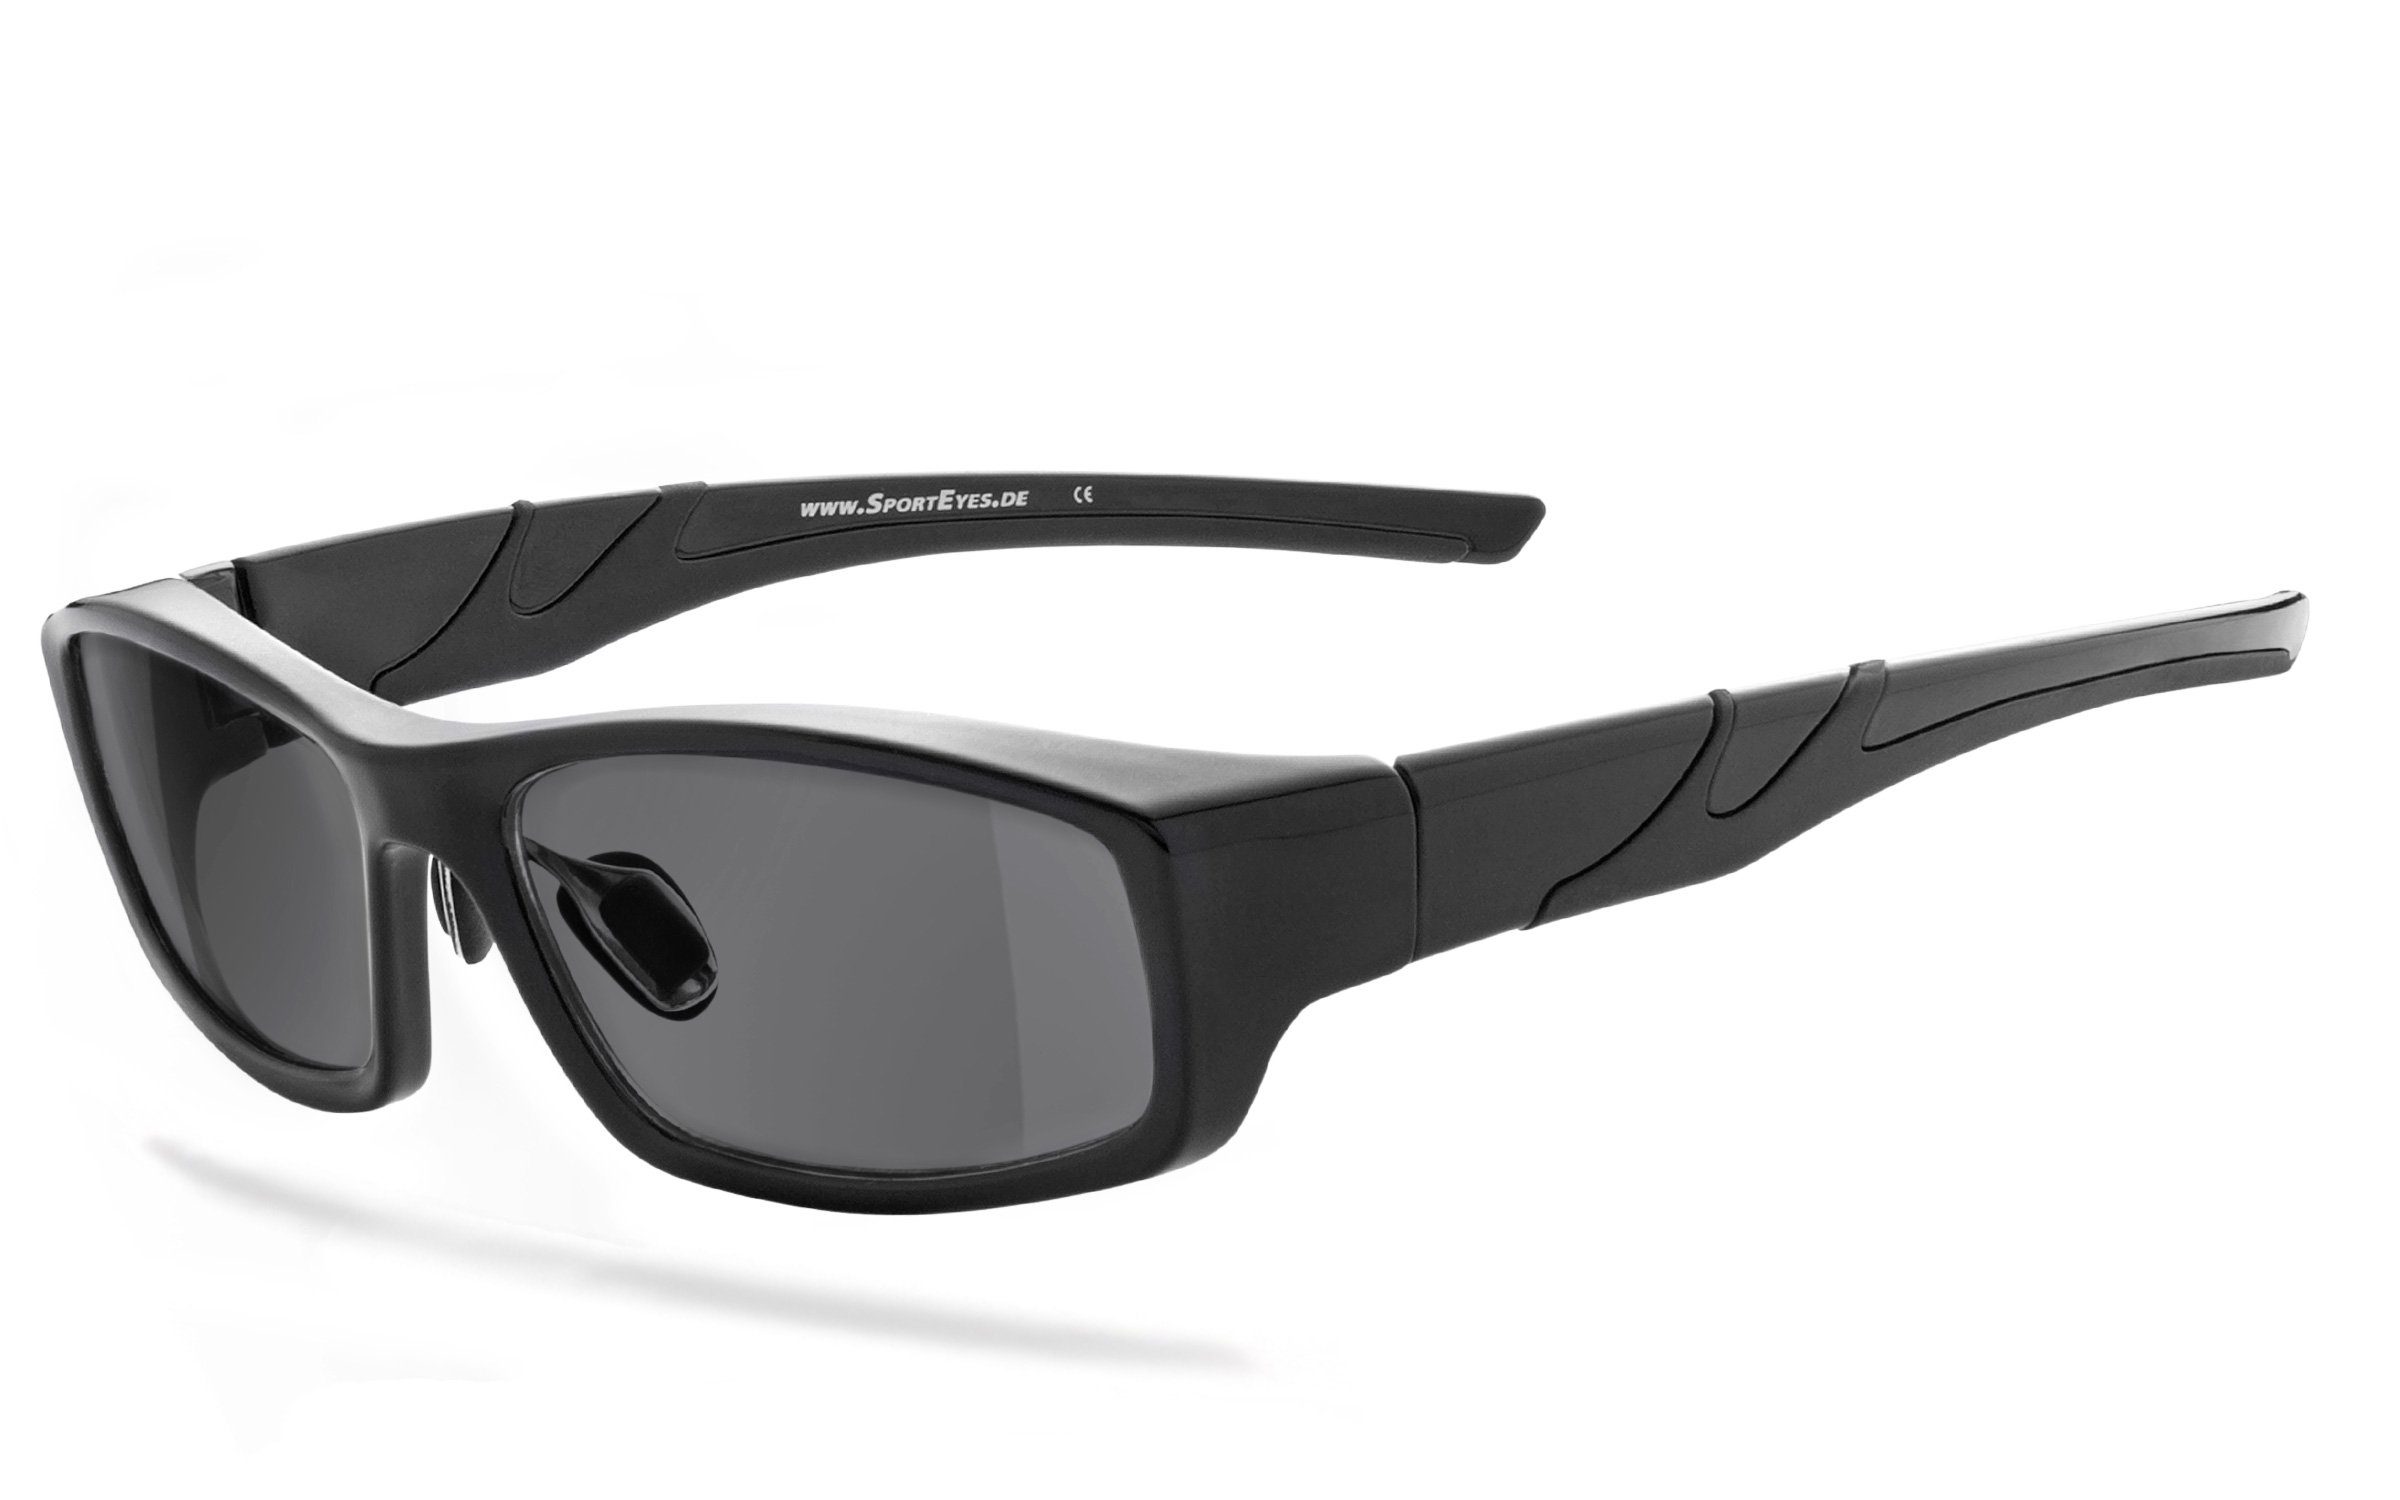 Gläser - selbsttönende selbsttönend 3040sb HSE schnell SportEyes - Sonnenbrille